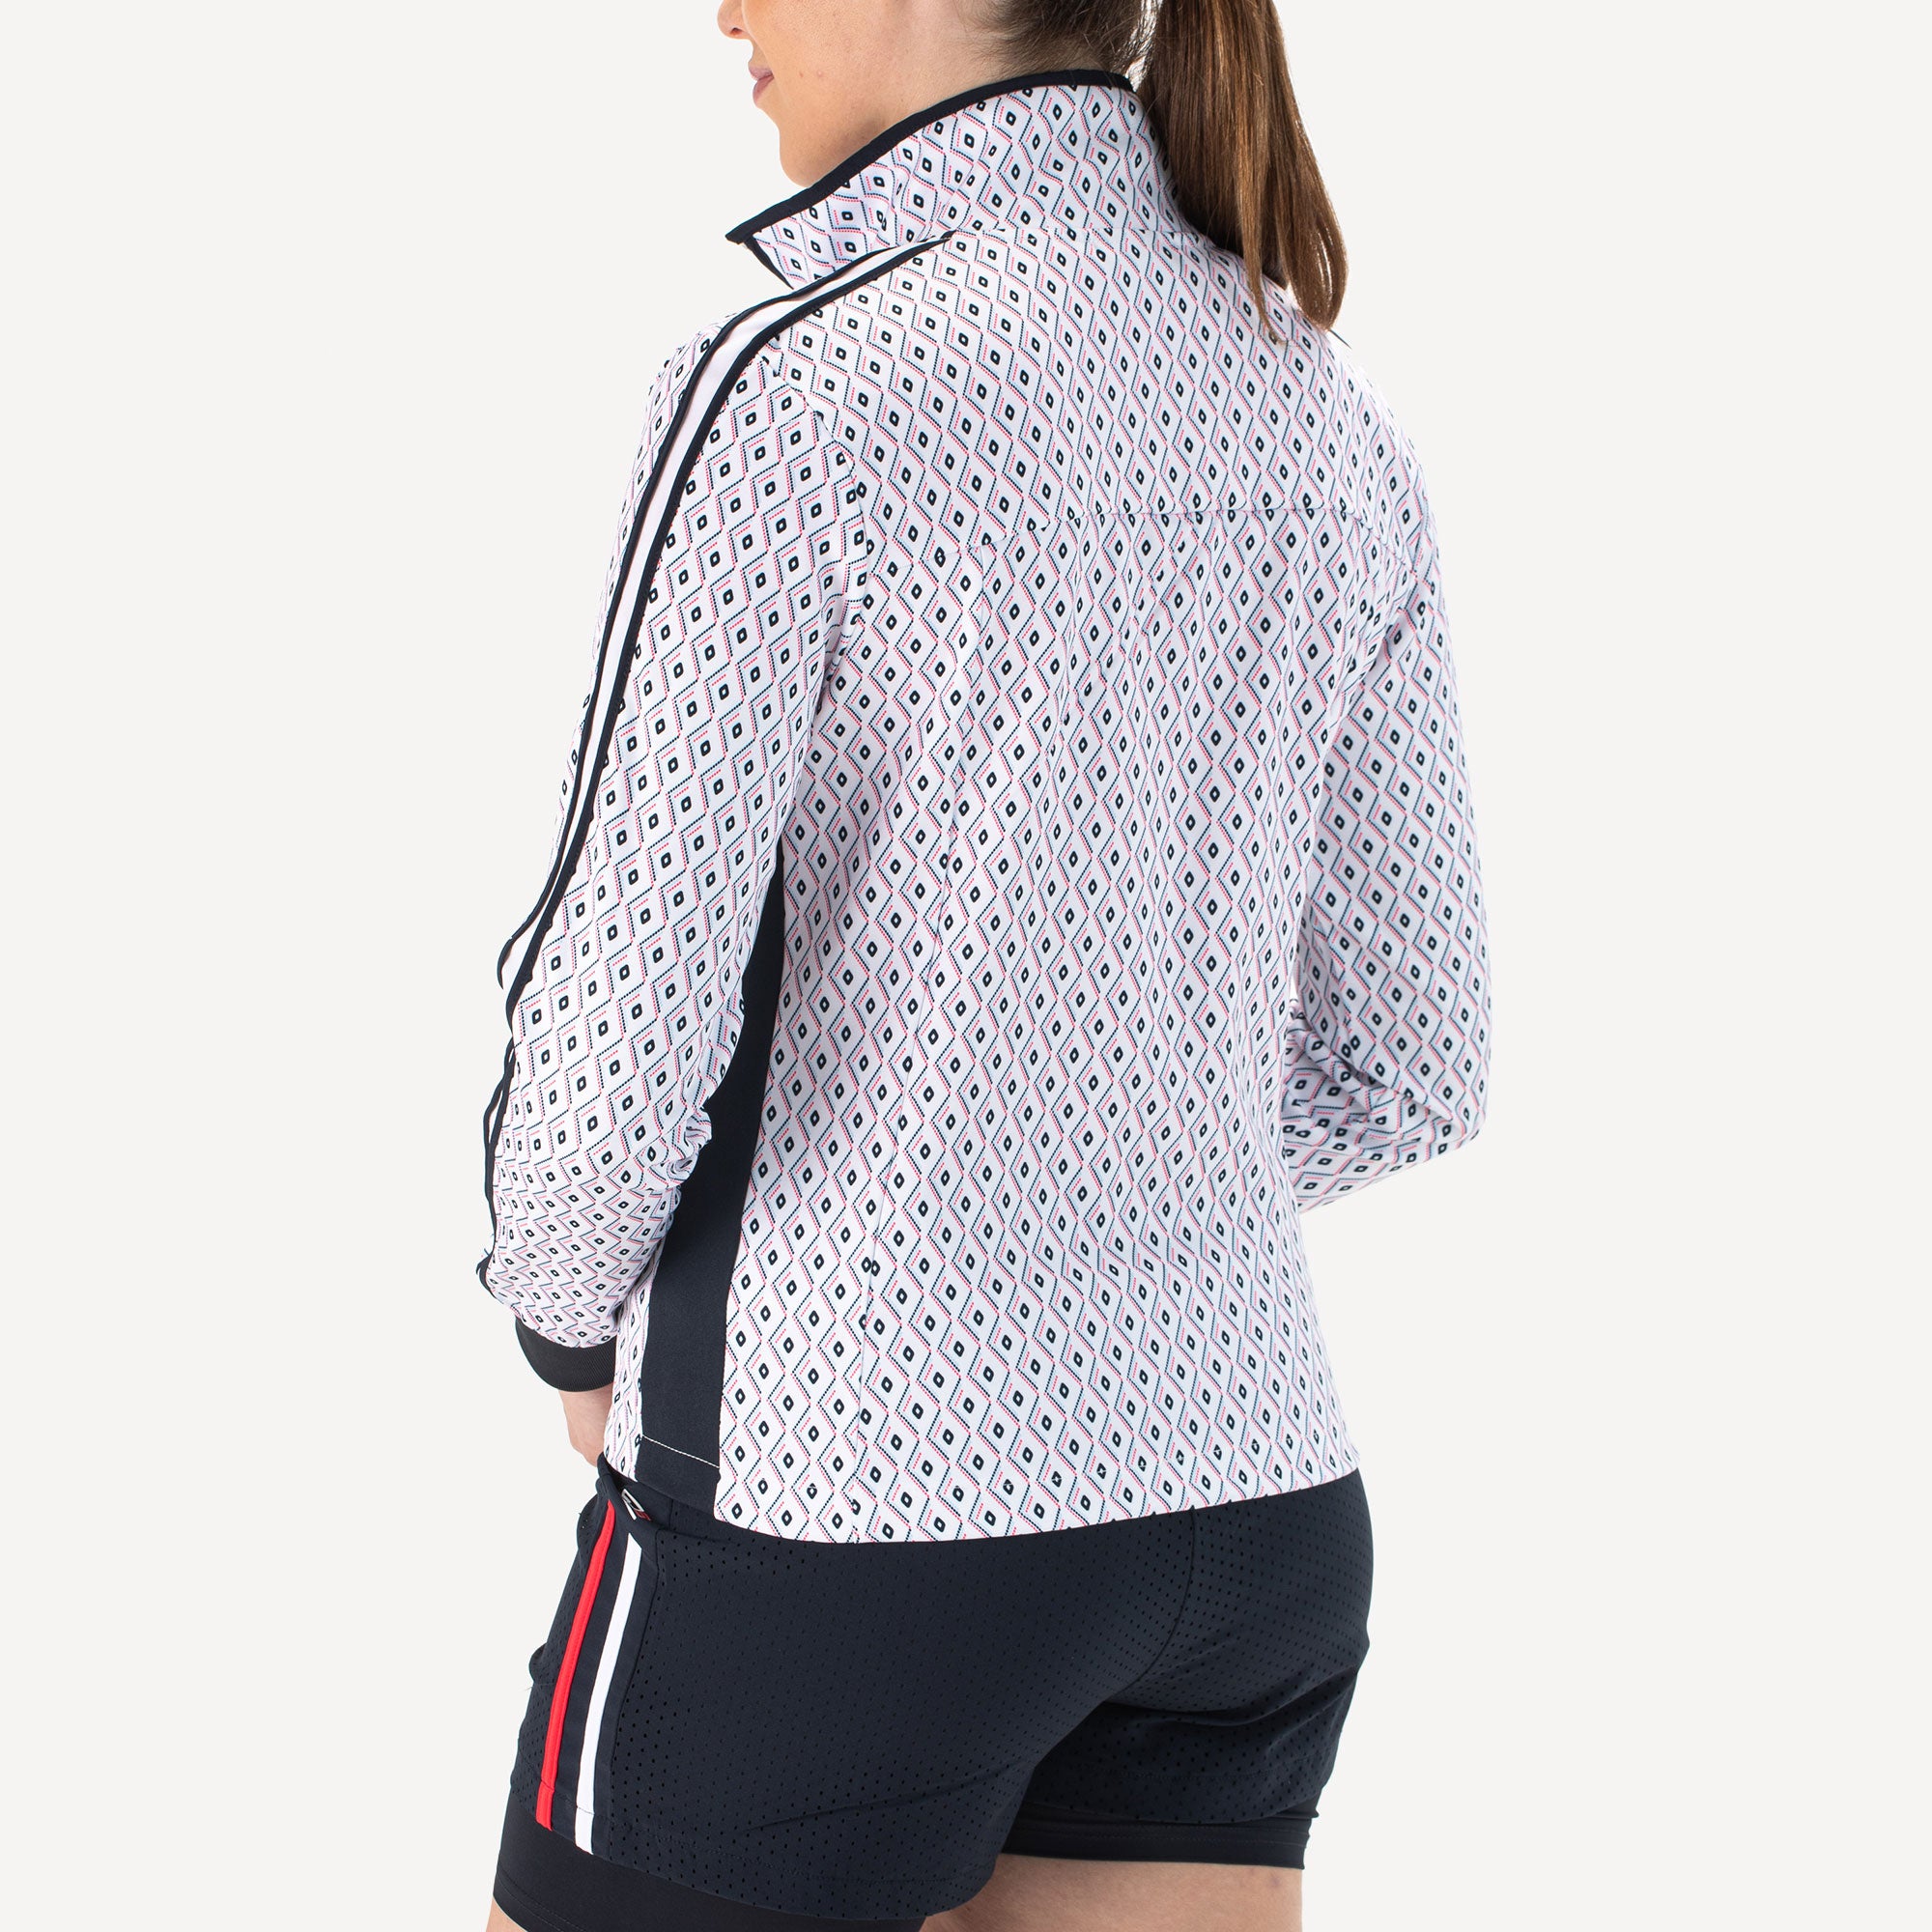 Sjeng Sports Fea Women's Tennis Jacket - White (2)